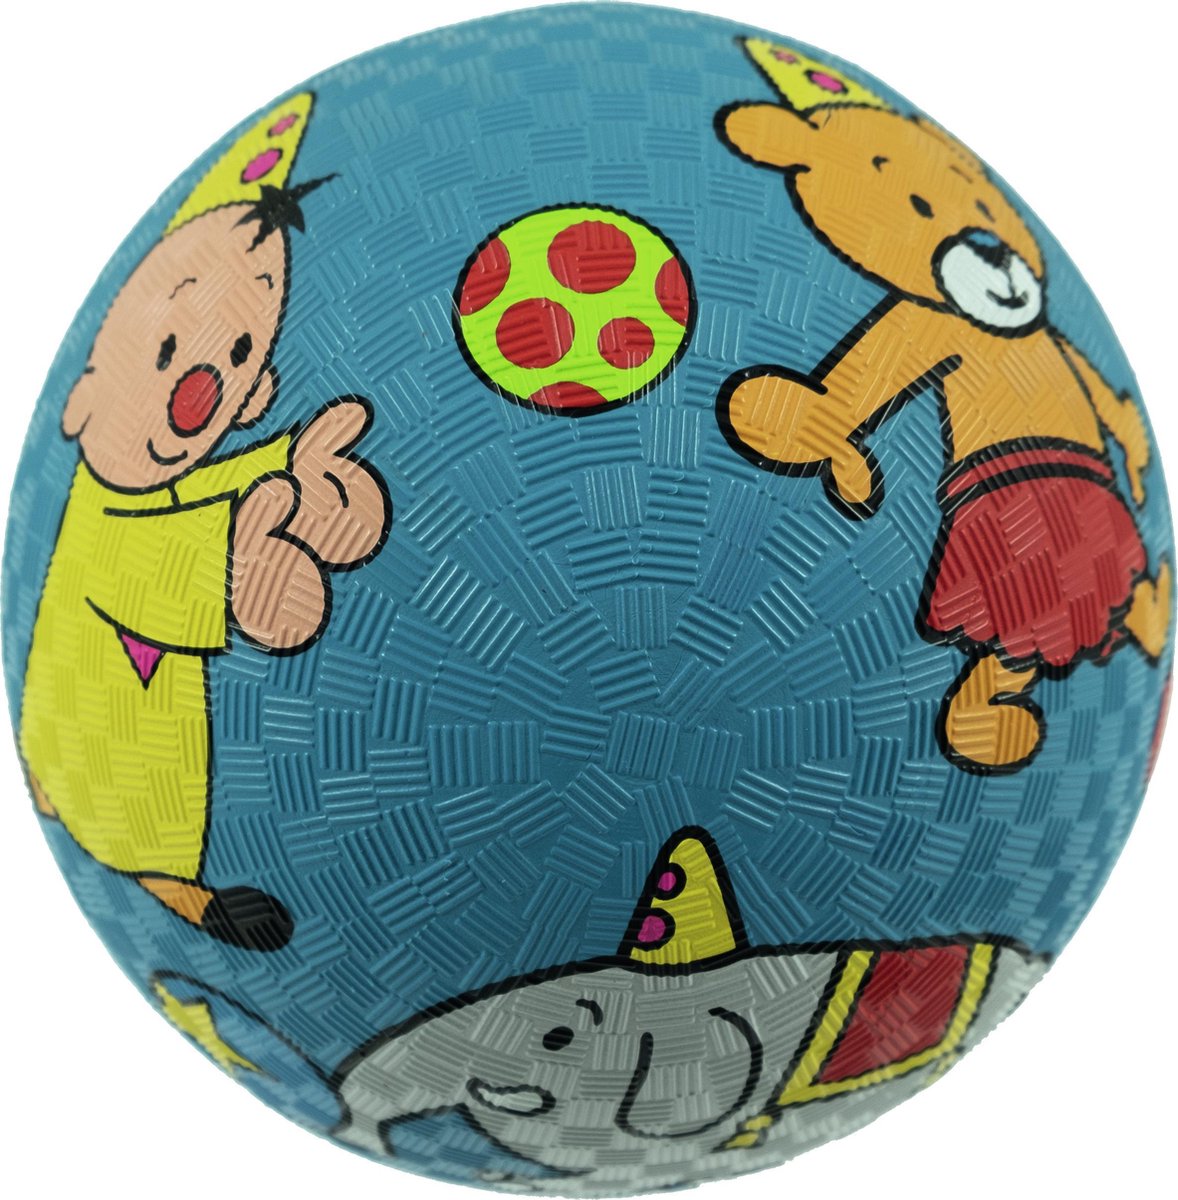 Bumba speelgoedbal - bal met structuur - 18 centimeter - Bumba